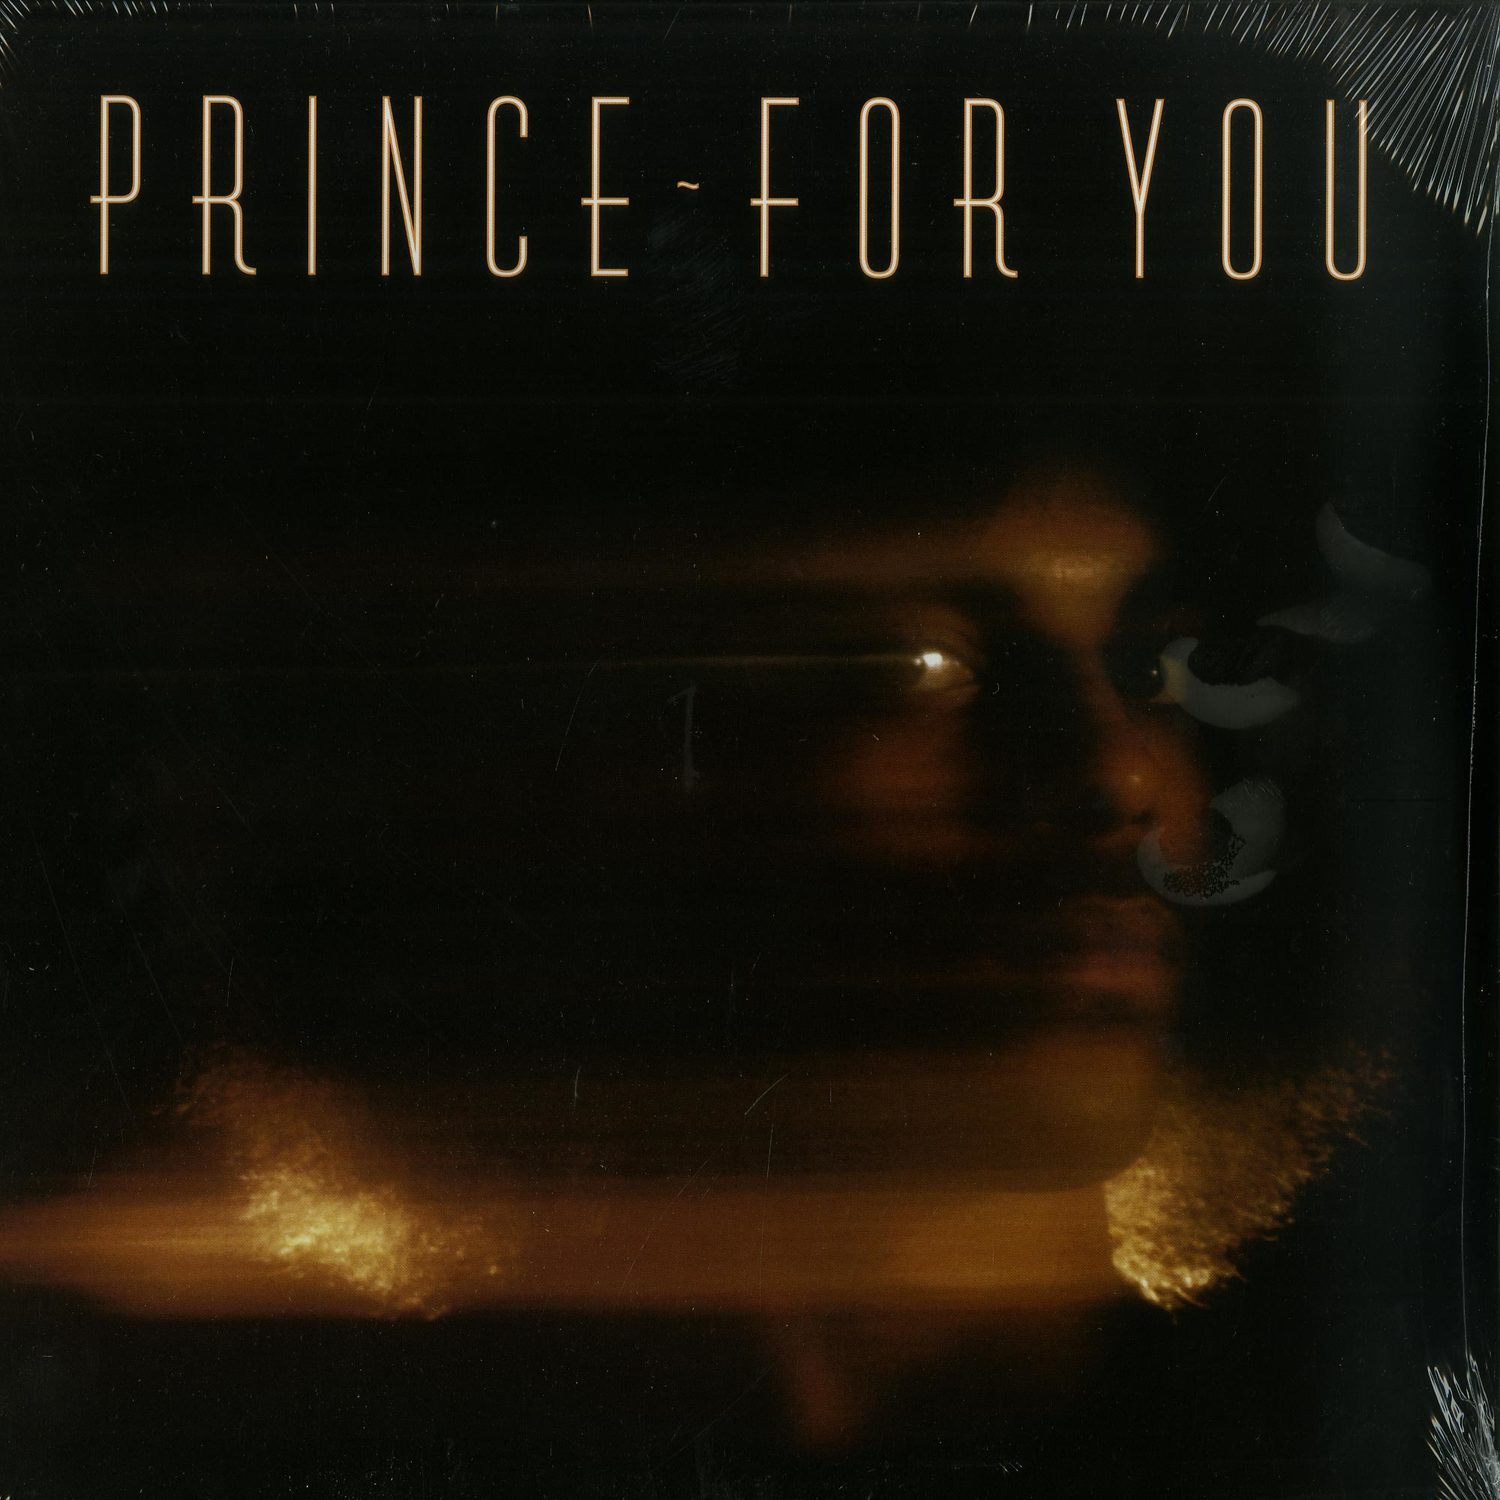 Prince - FOR YOU 